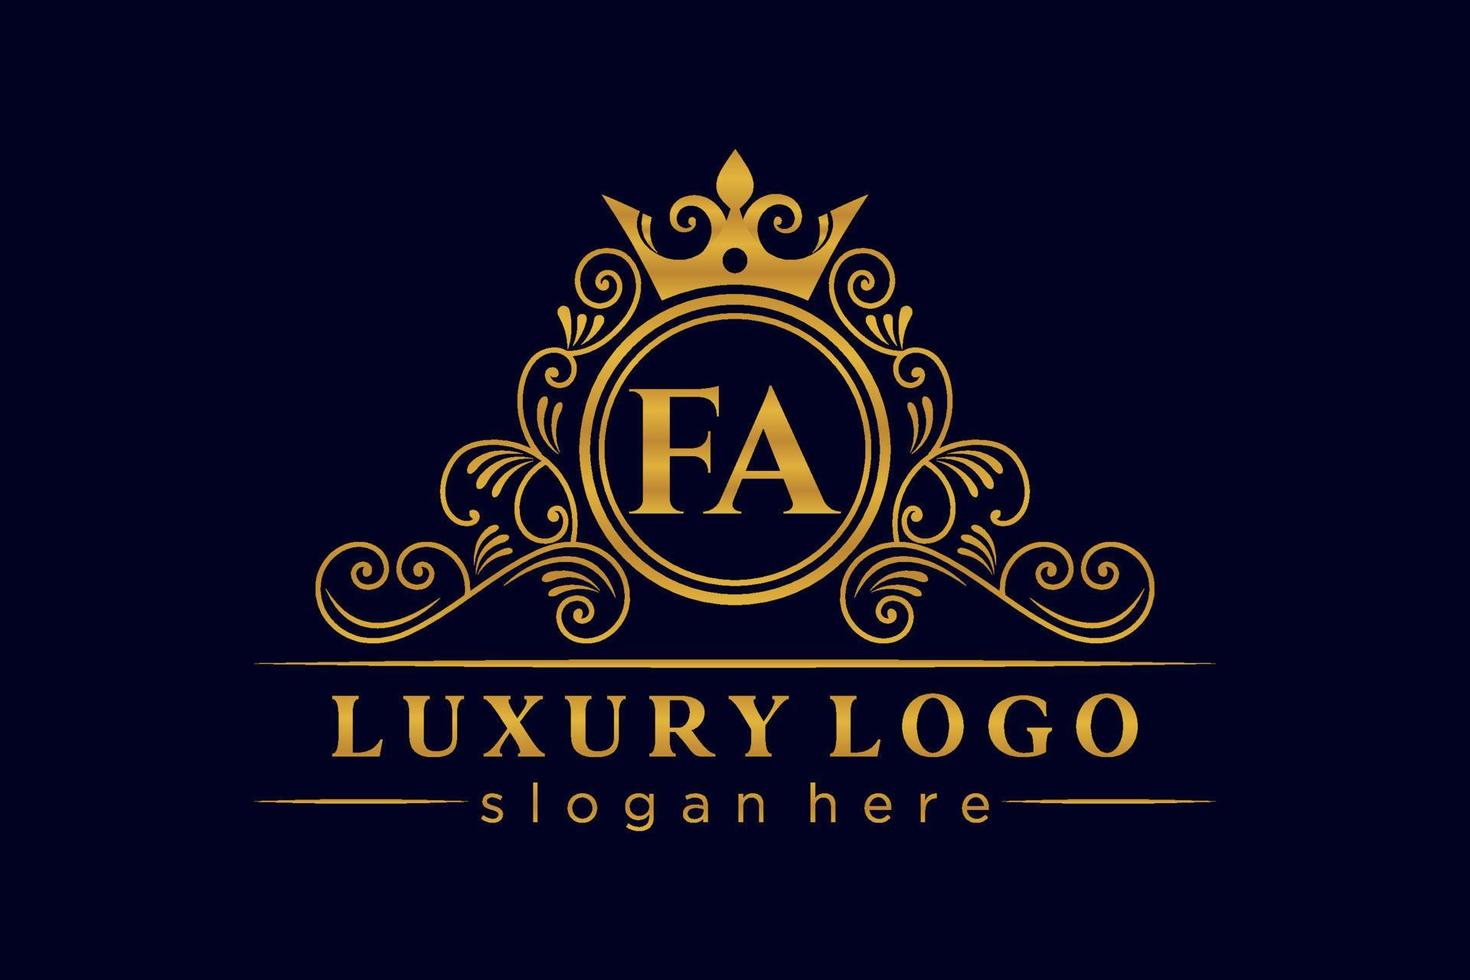 FA Initial Letter Gold calligraphic feminine floral hand drawn heraldic monogram antique vintage style luxury logo design Premium Vector